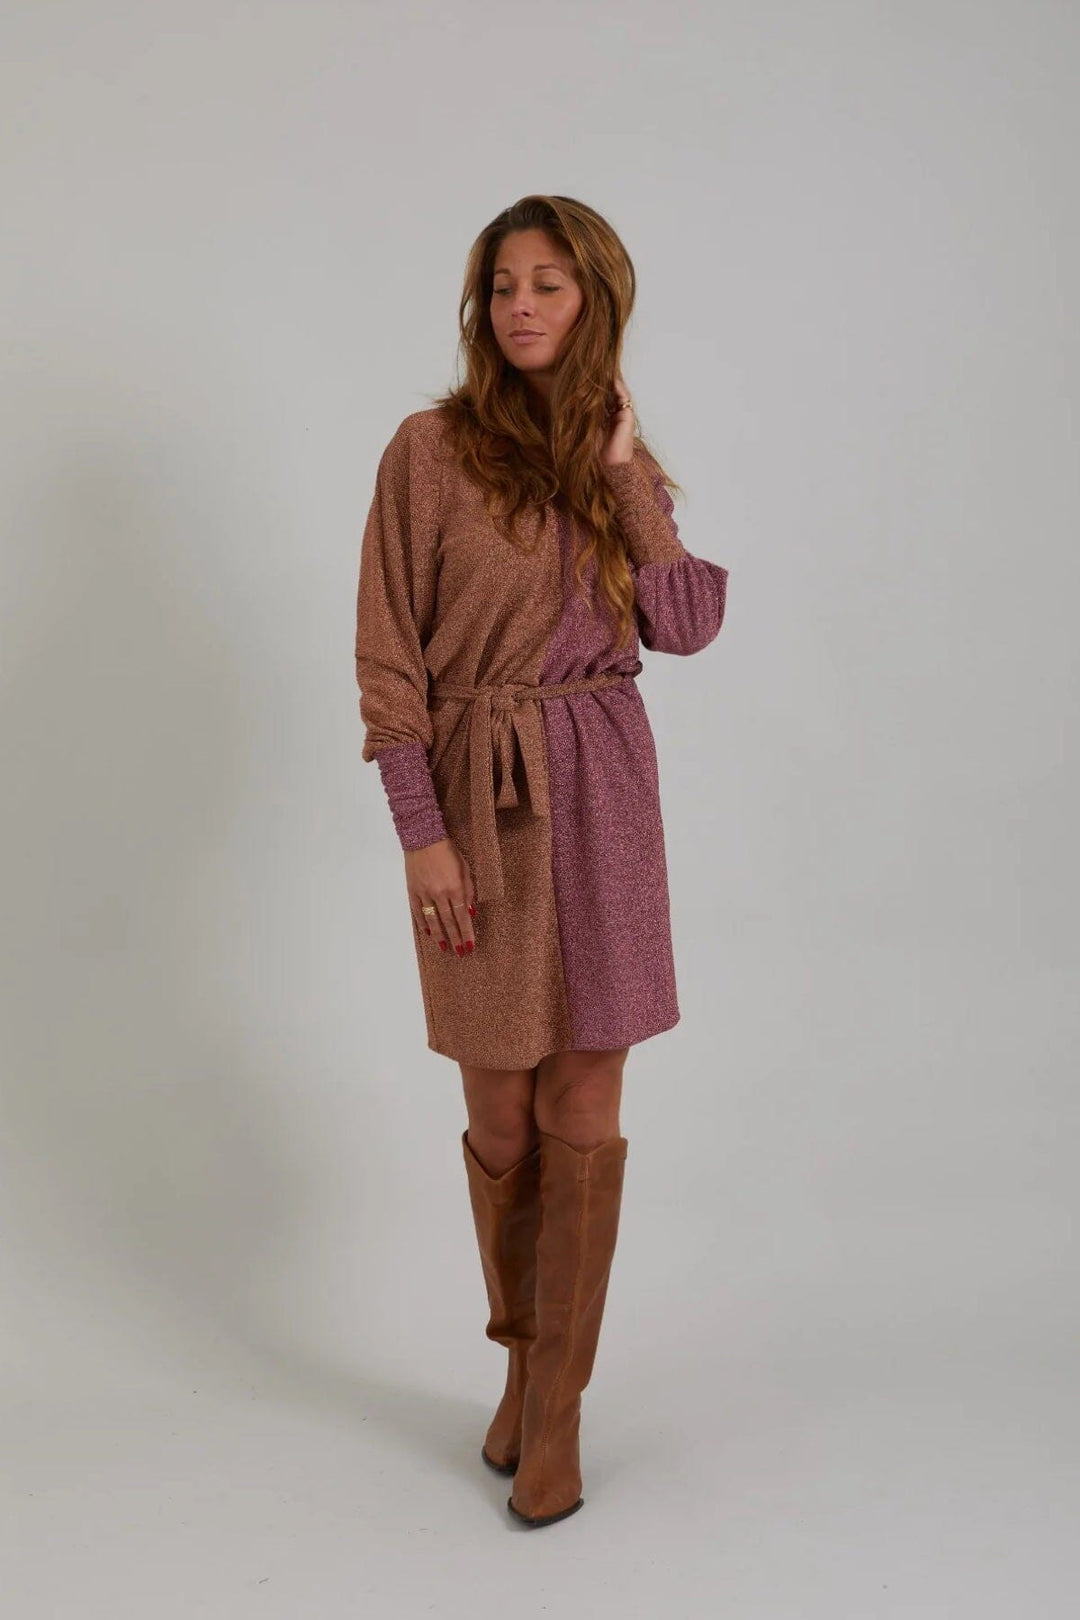 Robe avec mélange de paillettes Femme - Robe - Robe courte coster